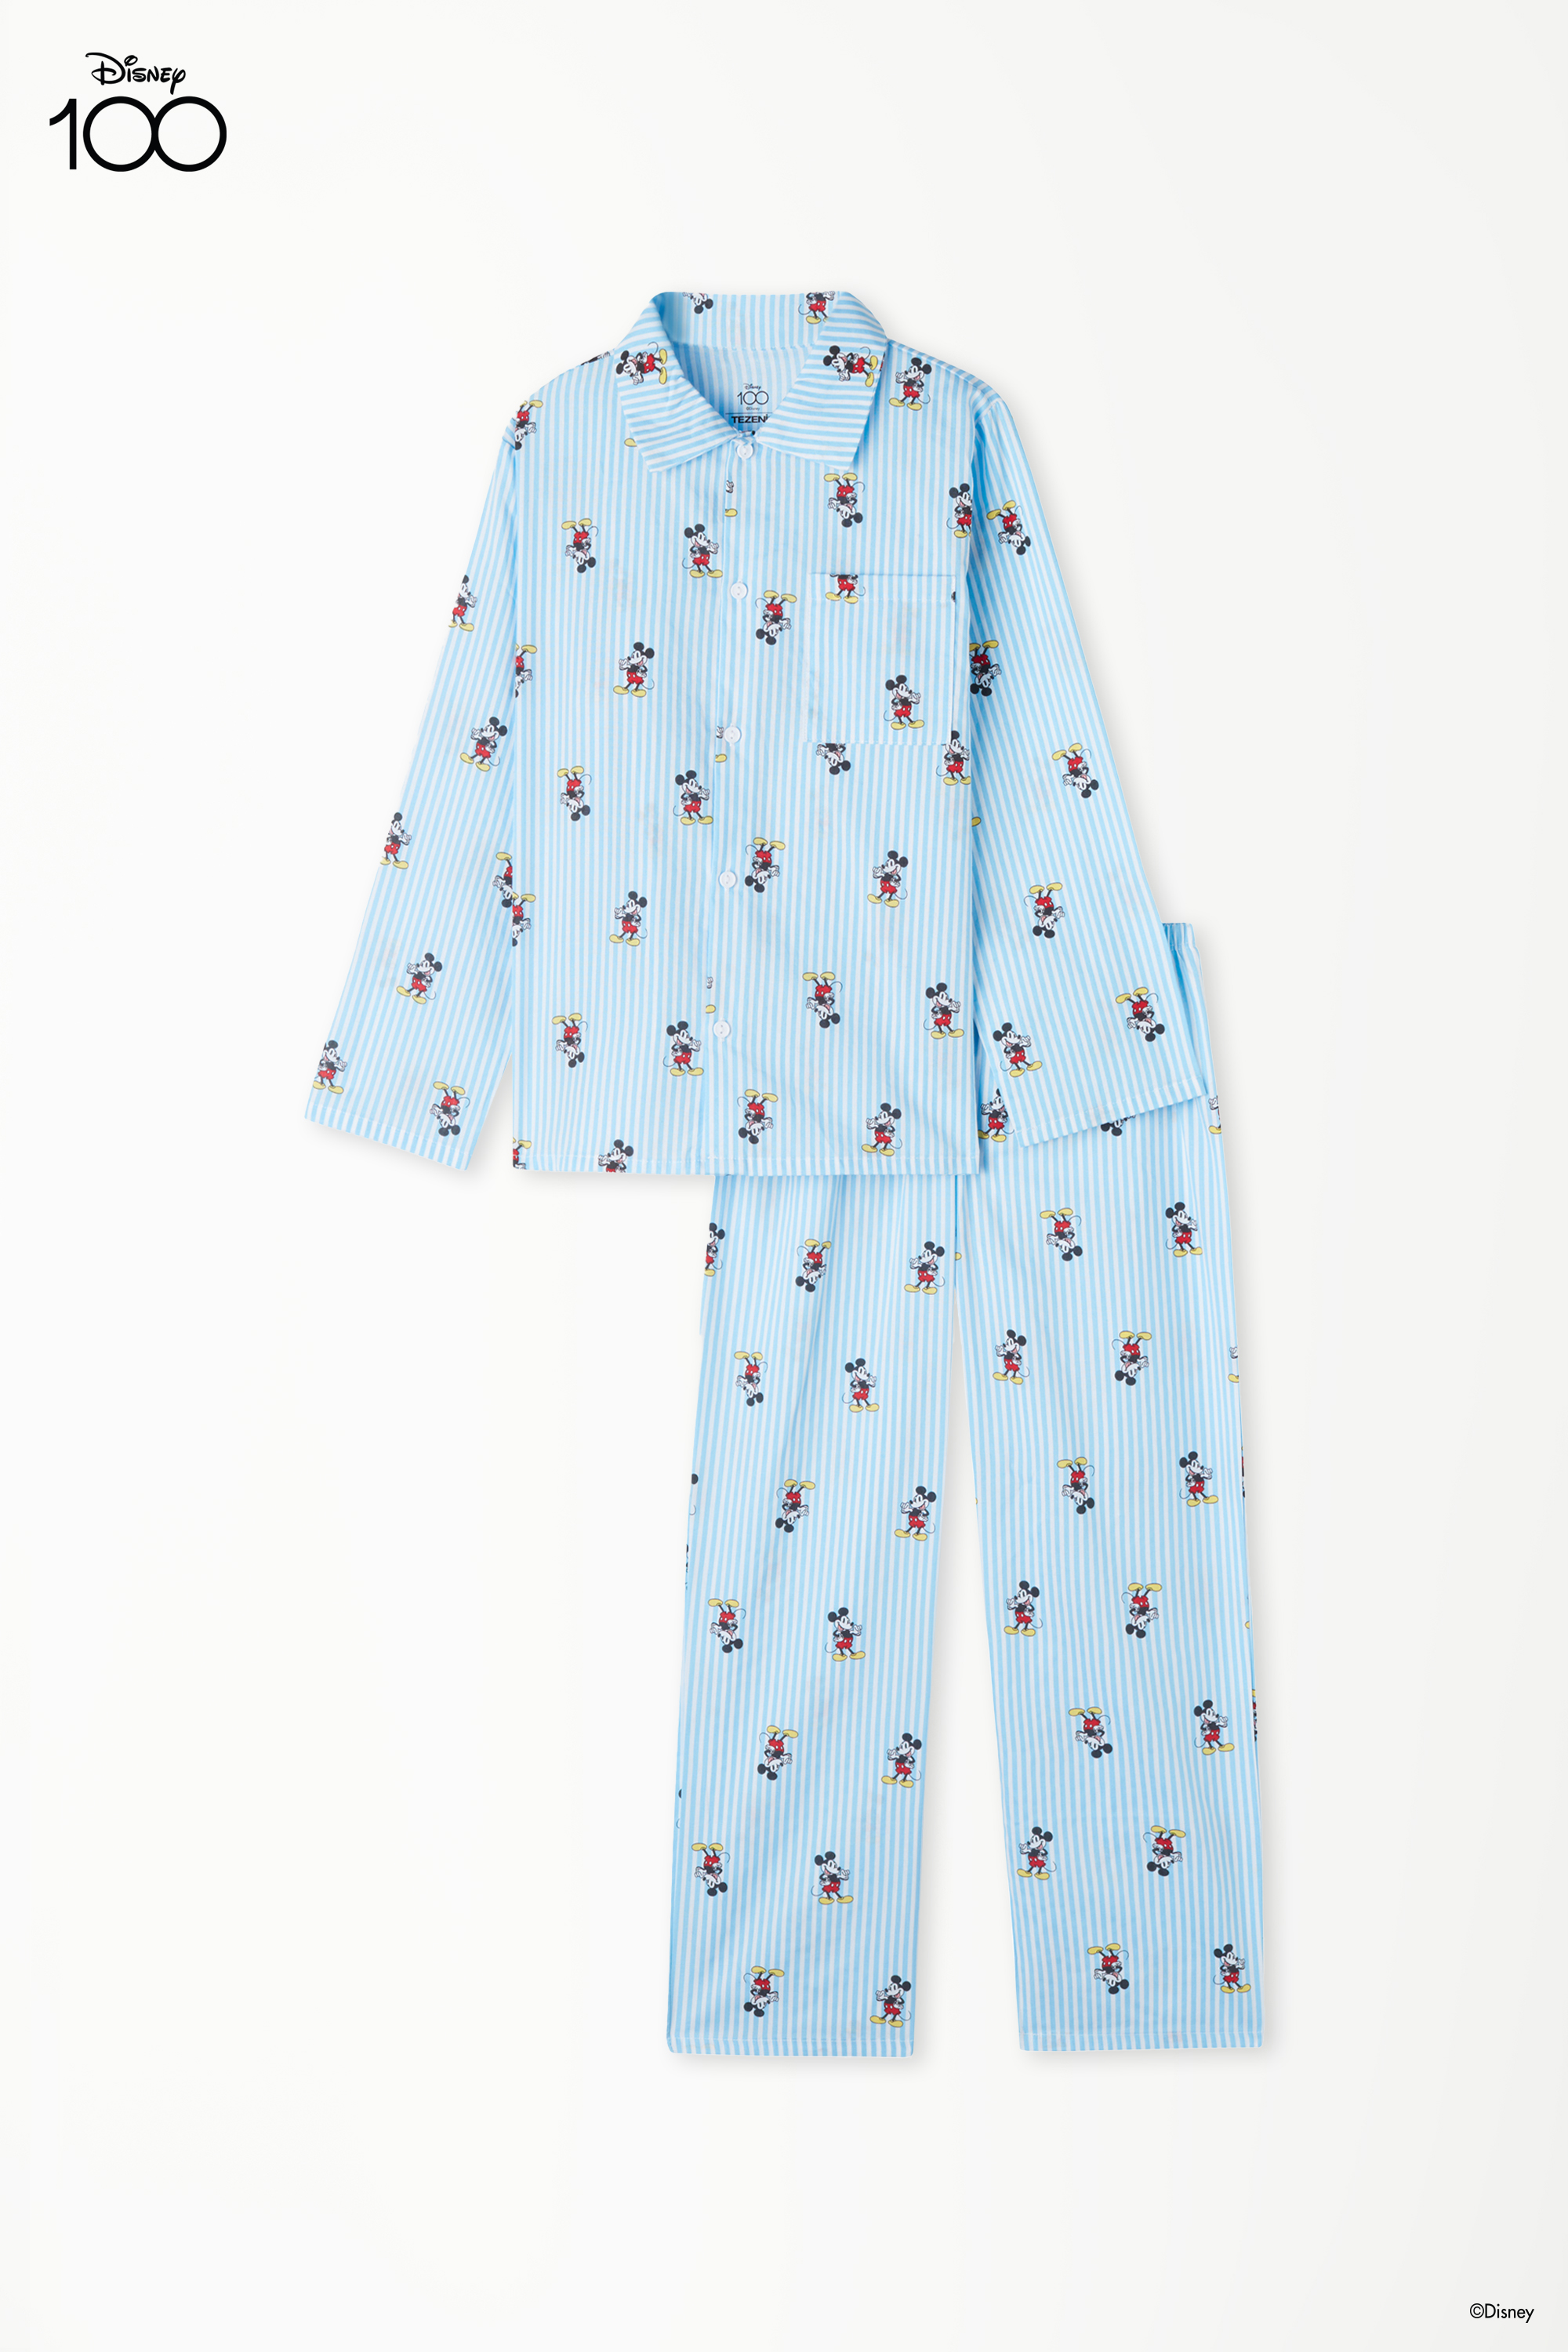 Pijama Comprido Menino Aberto Tecido Algodão Estampado Disney 100